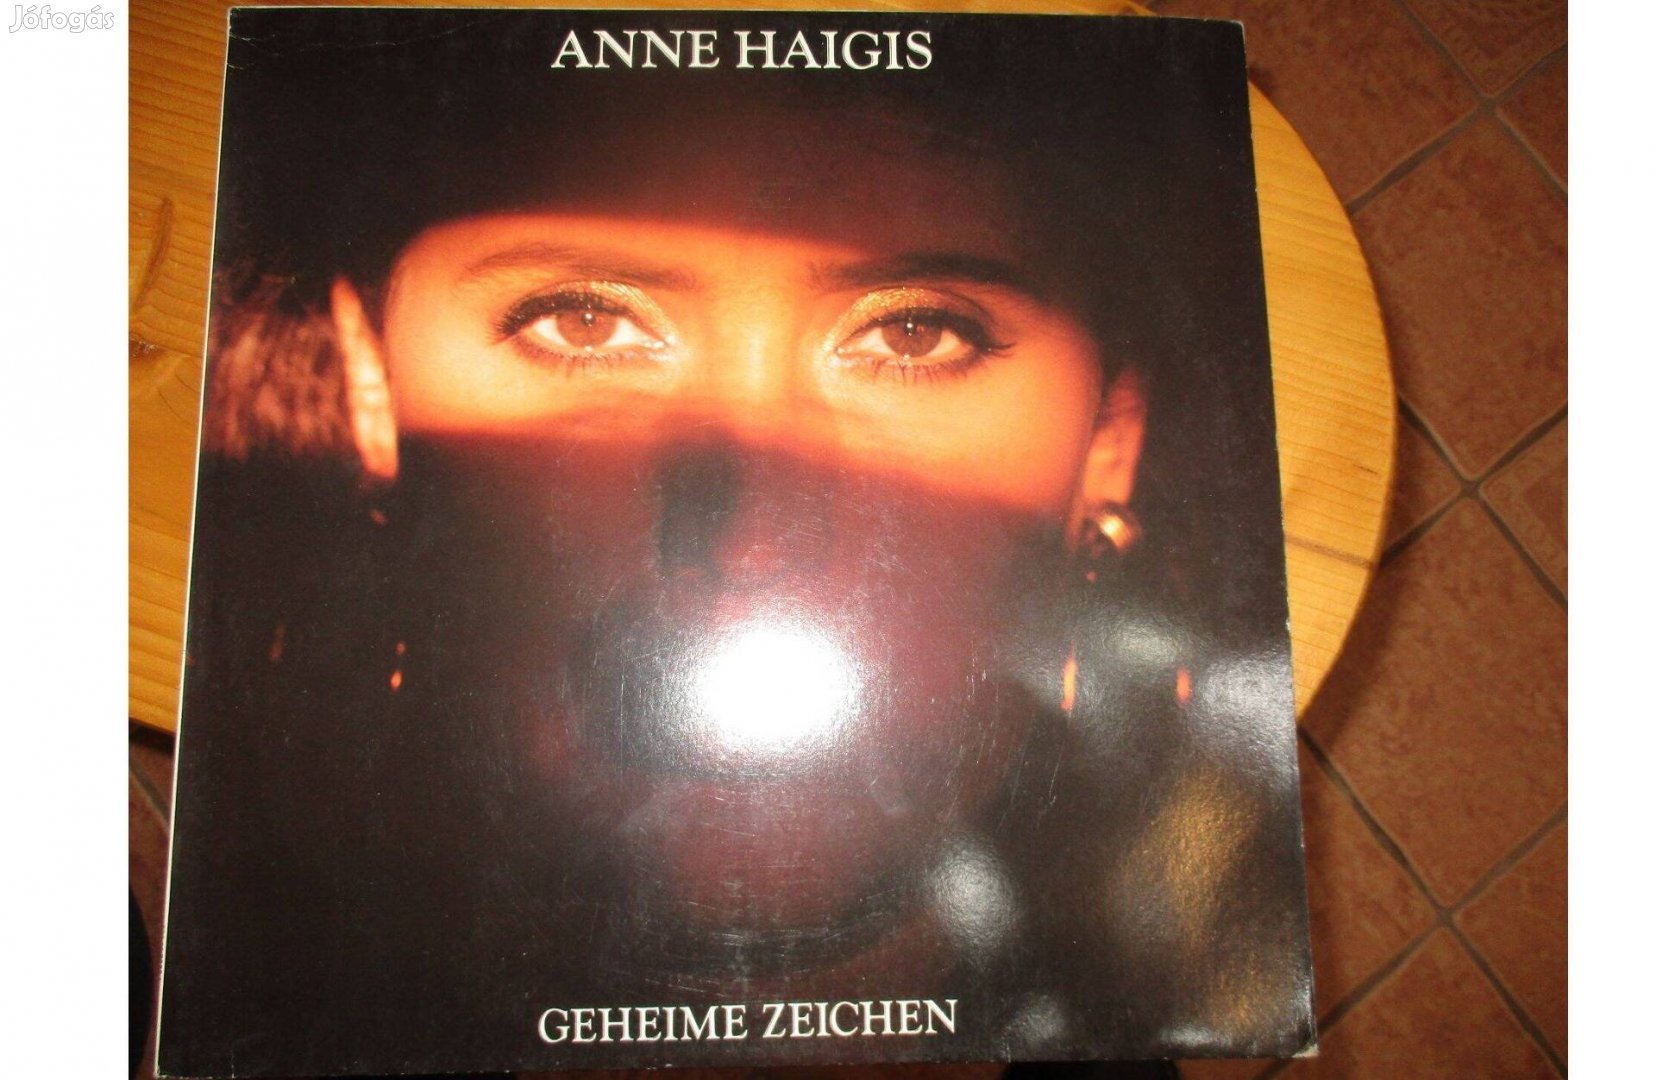 Anne Haigis bakelit hanglemez eladó